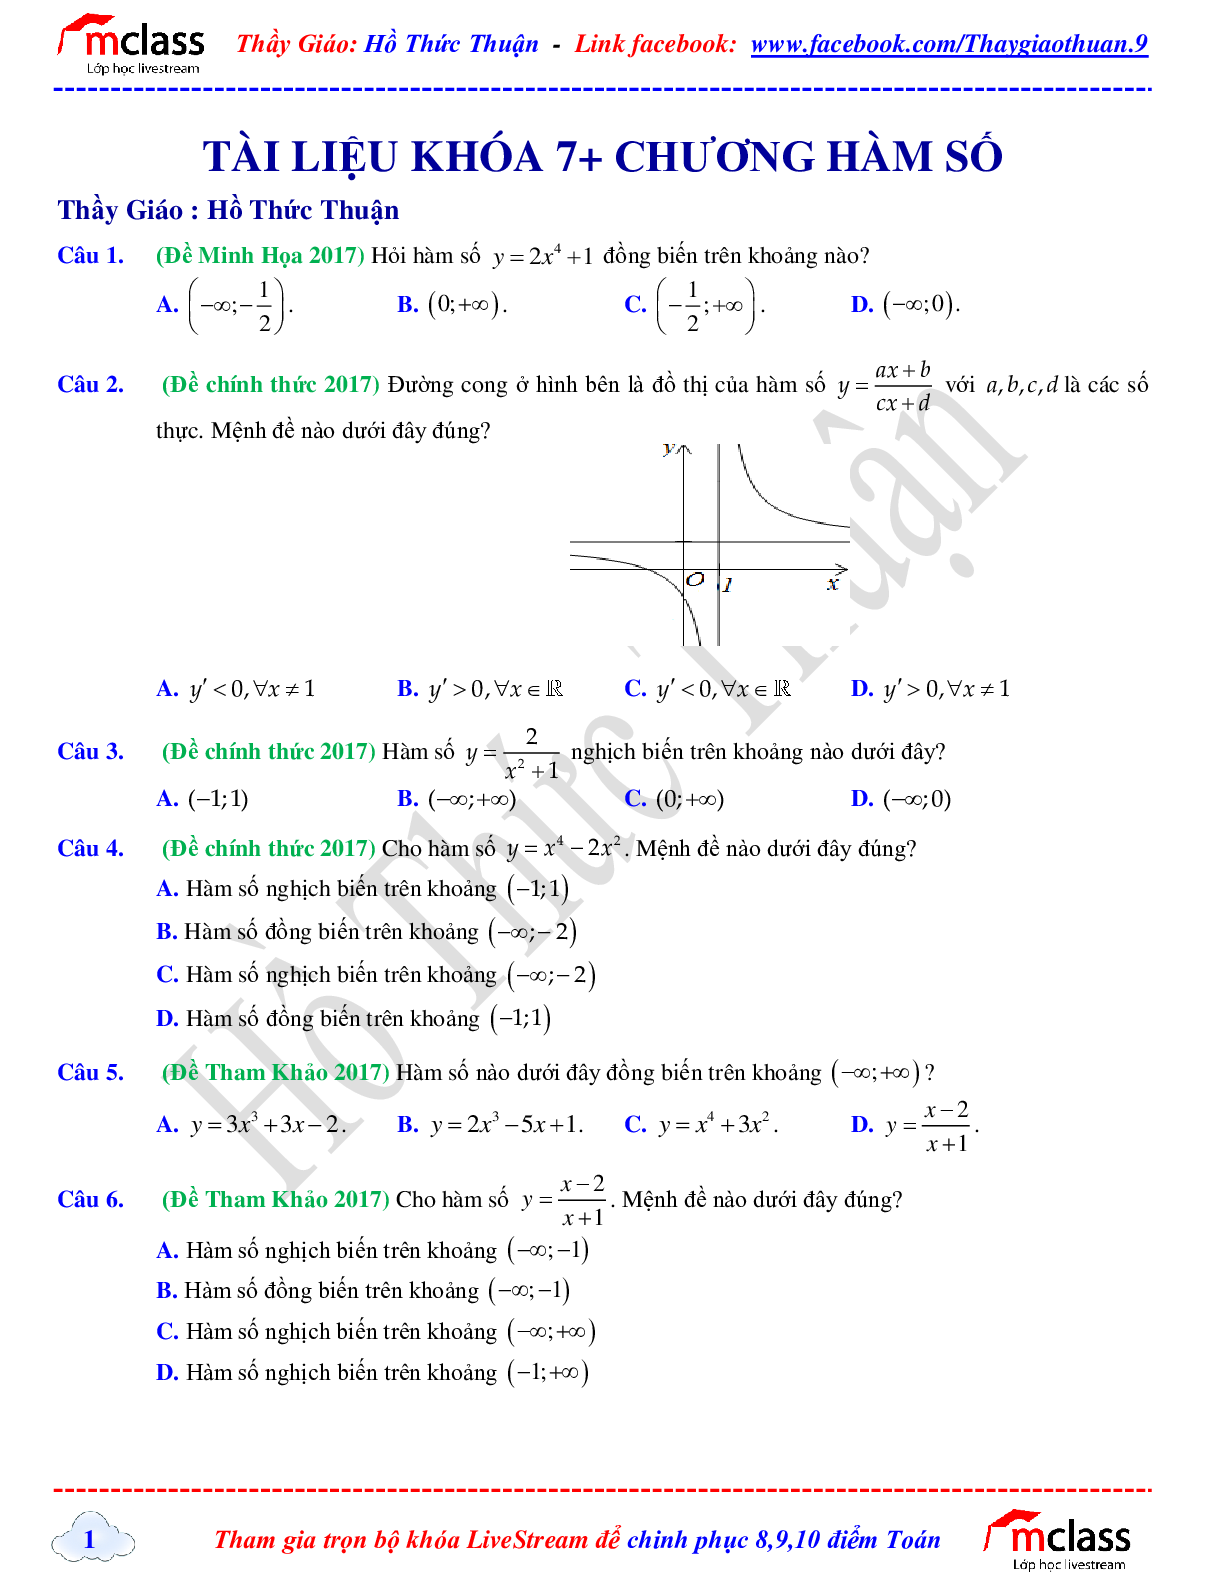 Tuyển tập chuyên đề hàm số khóa 7+ của tác giả Hồ Thức Thuận (trang 1)